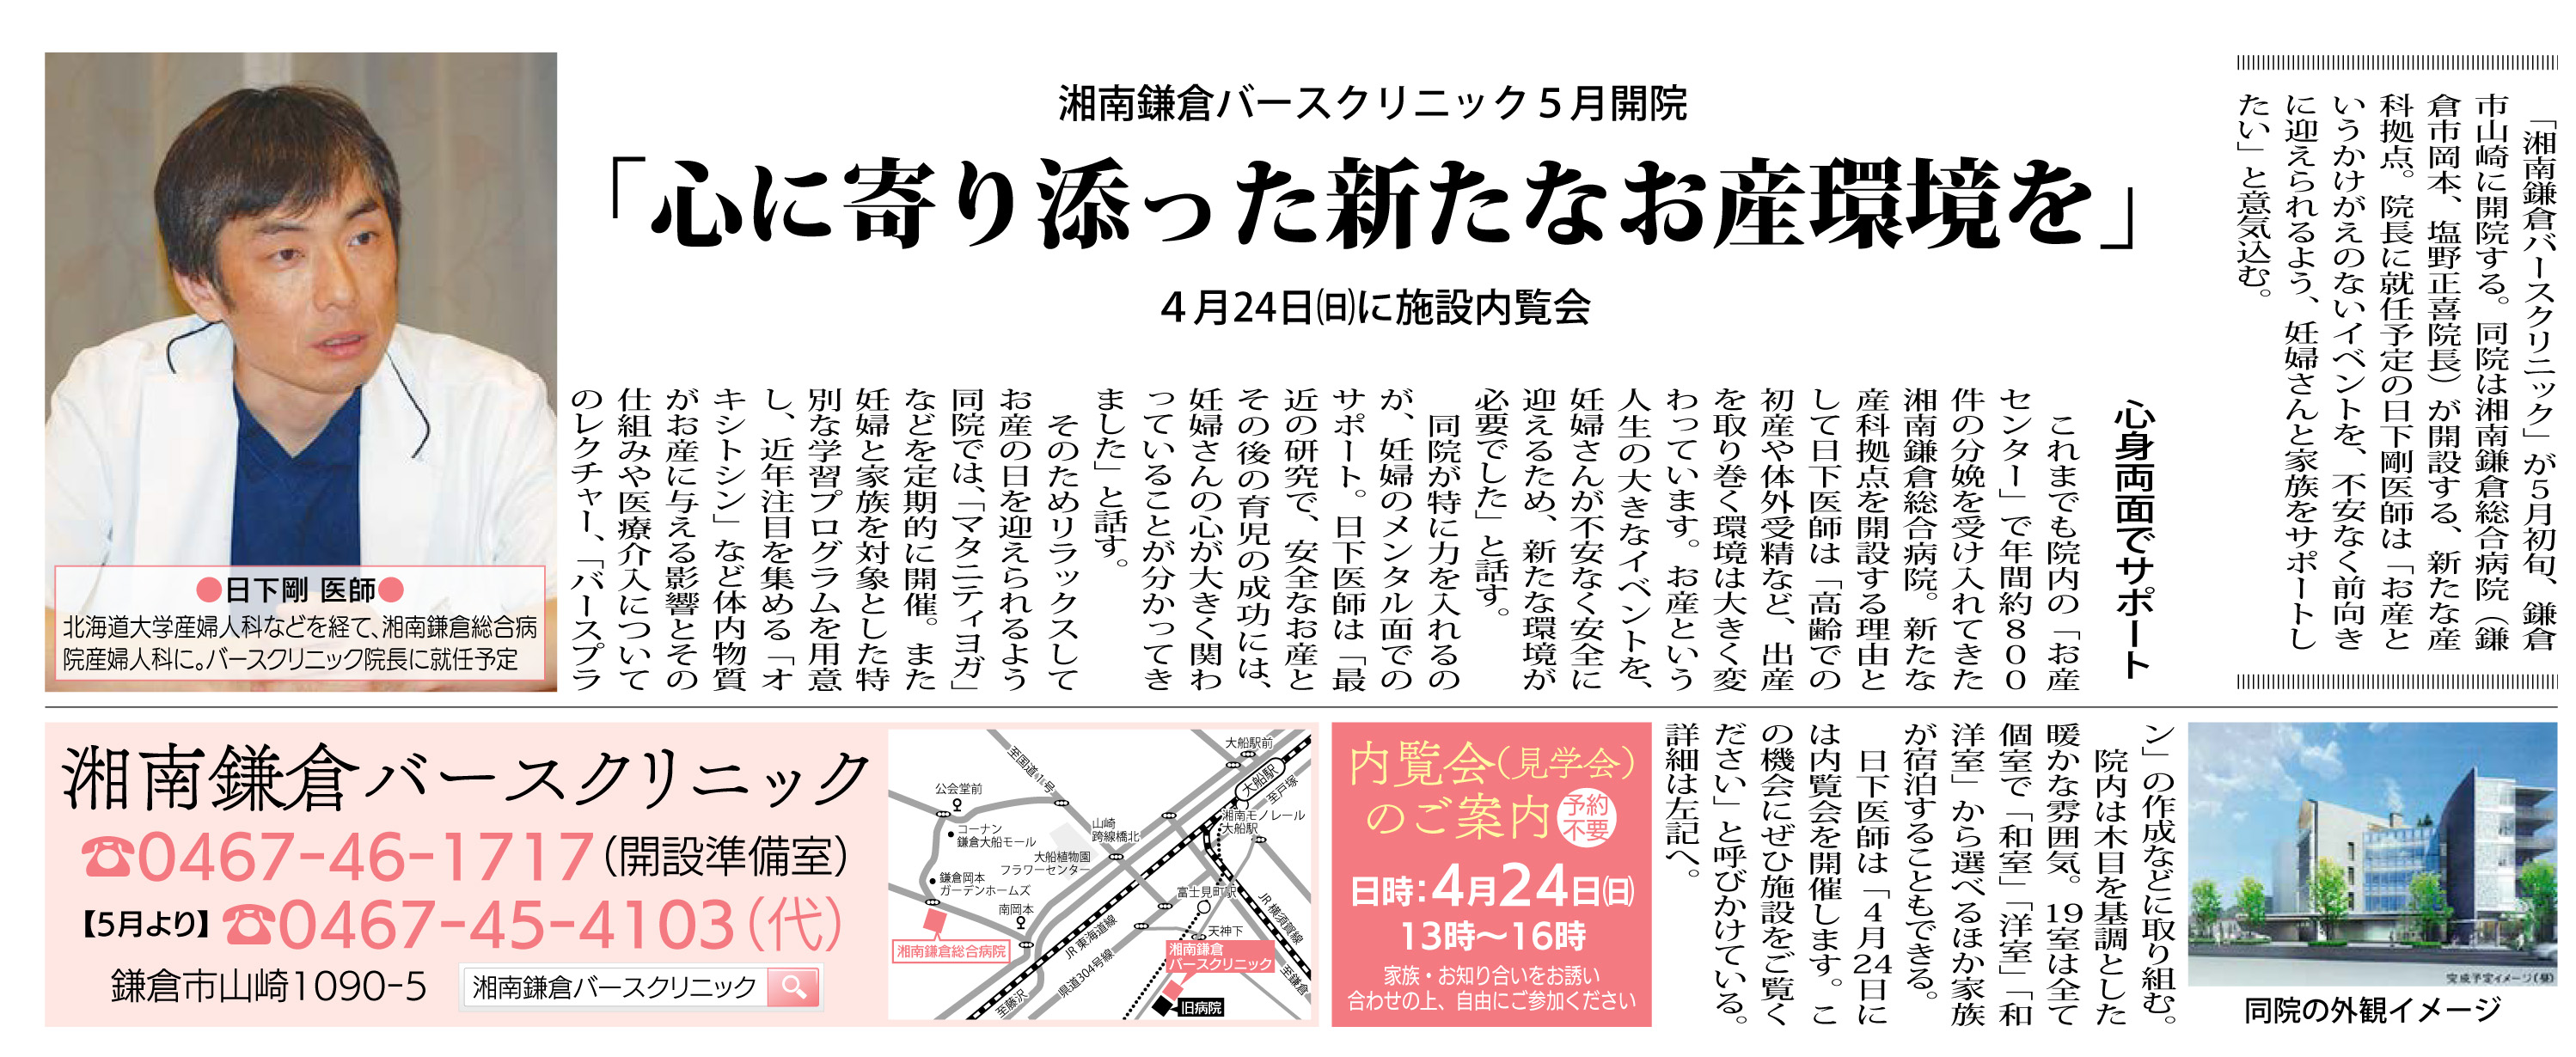 公式 タウンニュース で 湘南鎌倉バースクリニックが紹介されました 湘南鎌倉総合病院